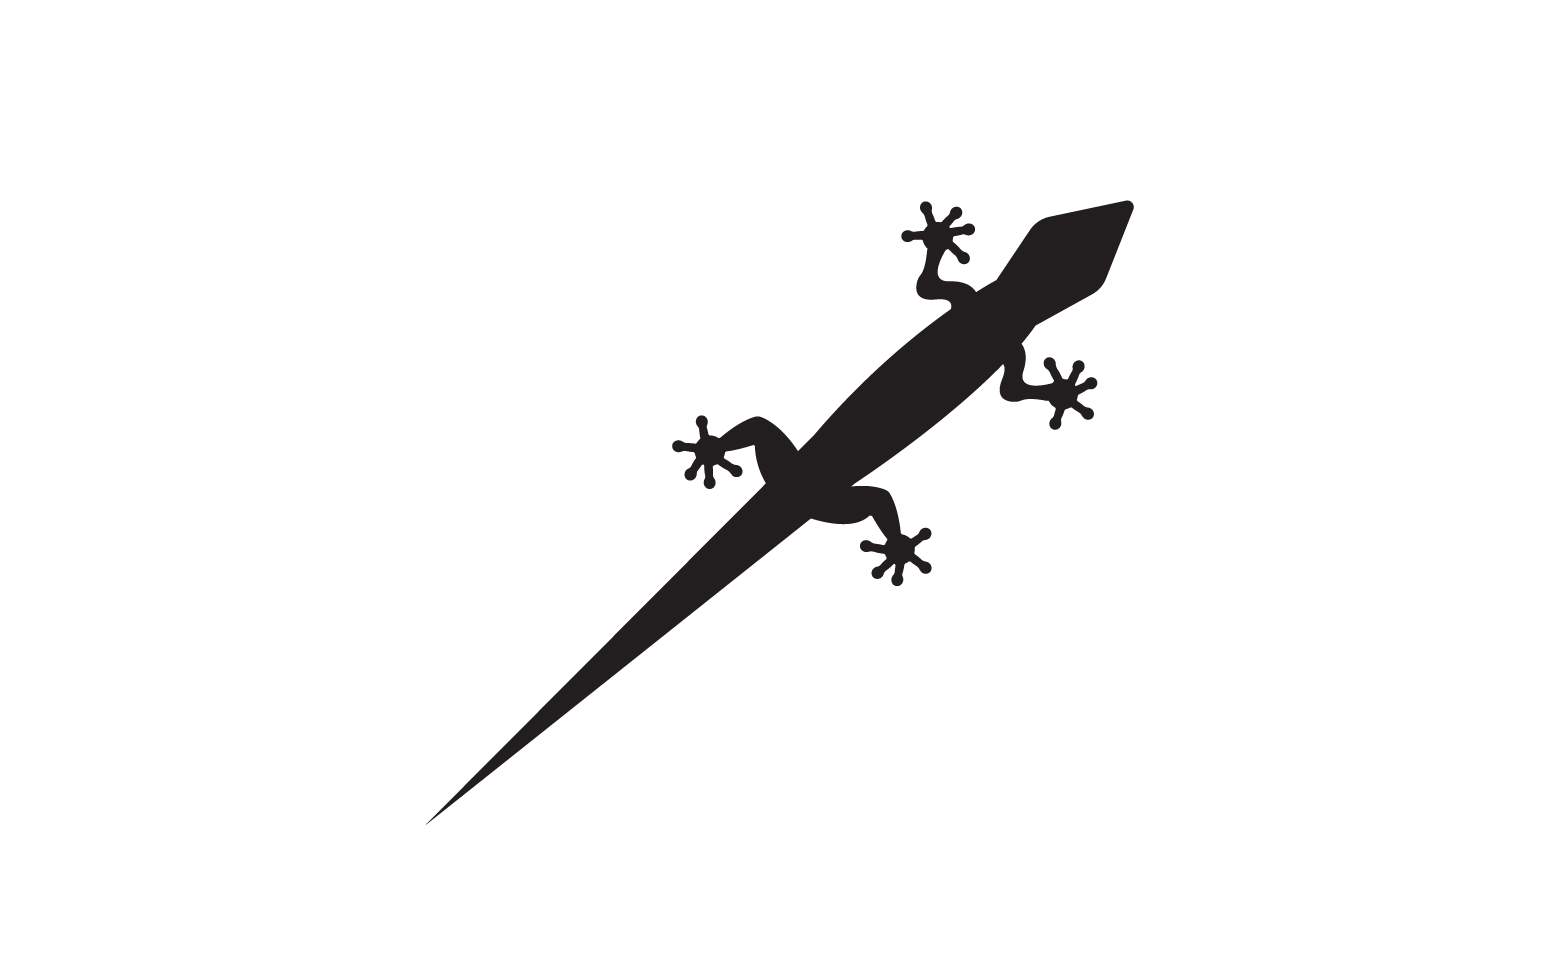 Lizard chameleon home lizard logo v11